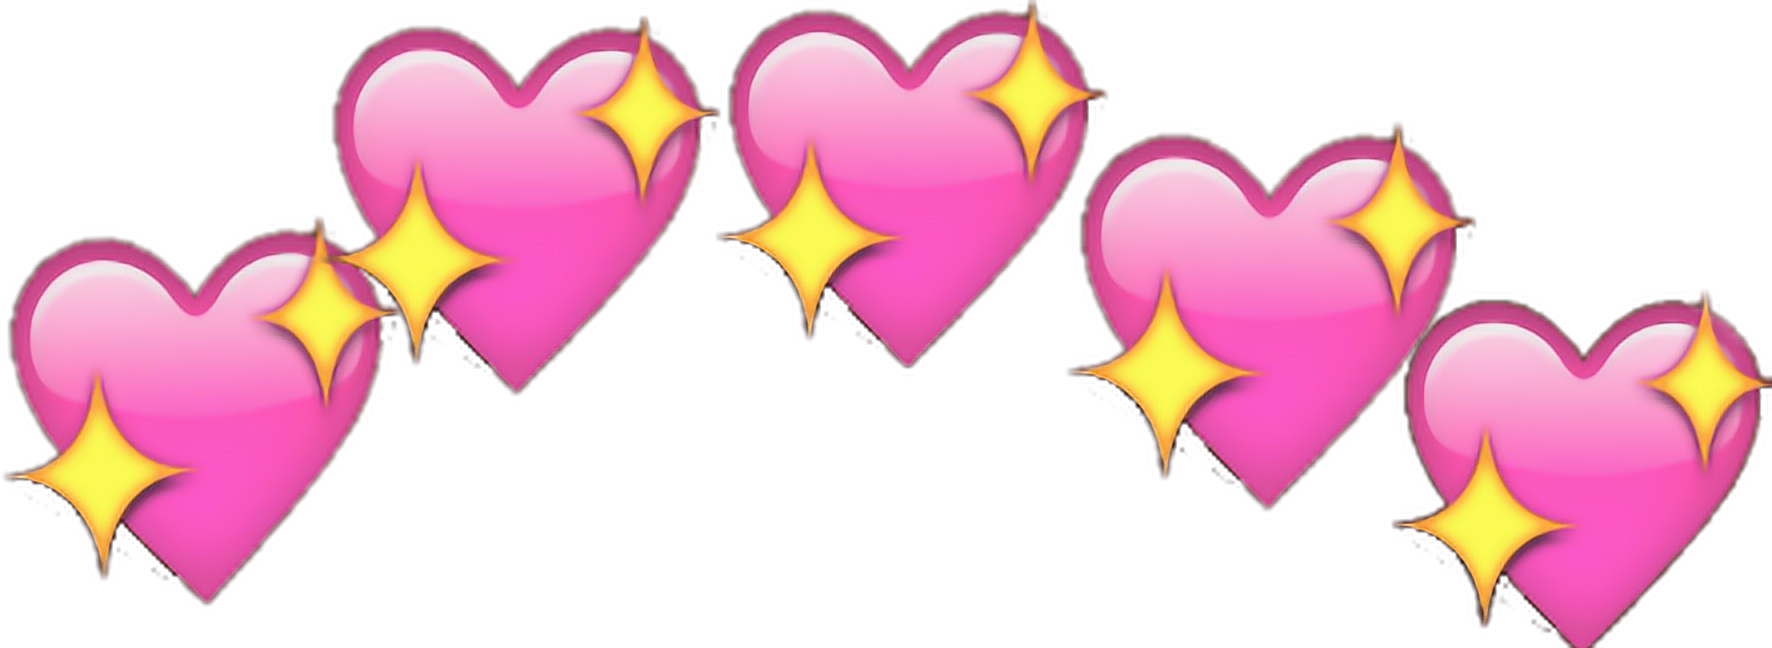 Hearts png images. Heart lights star emoji